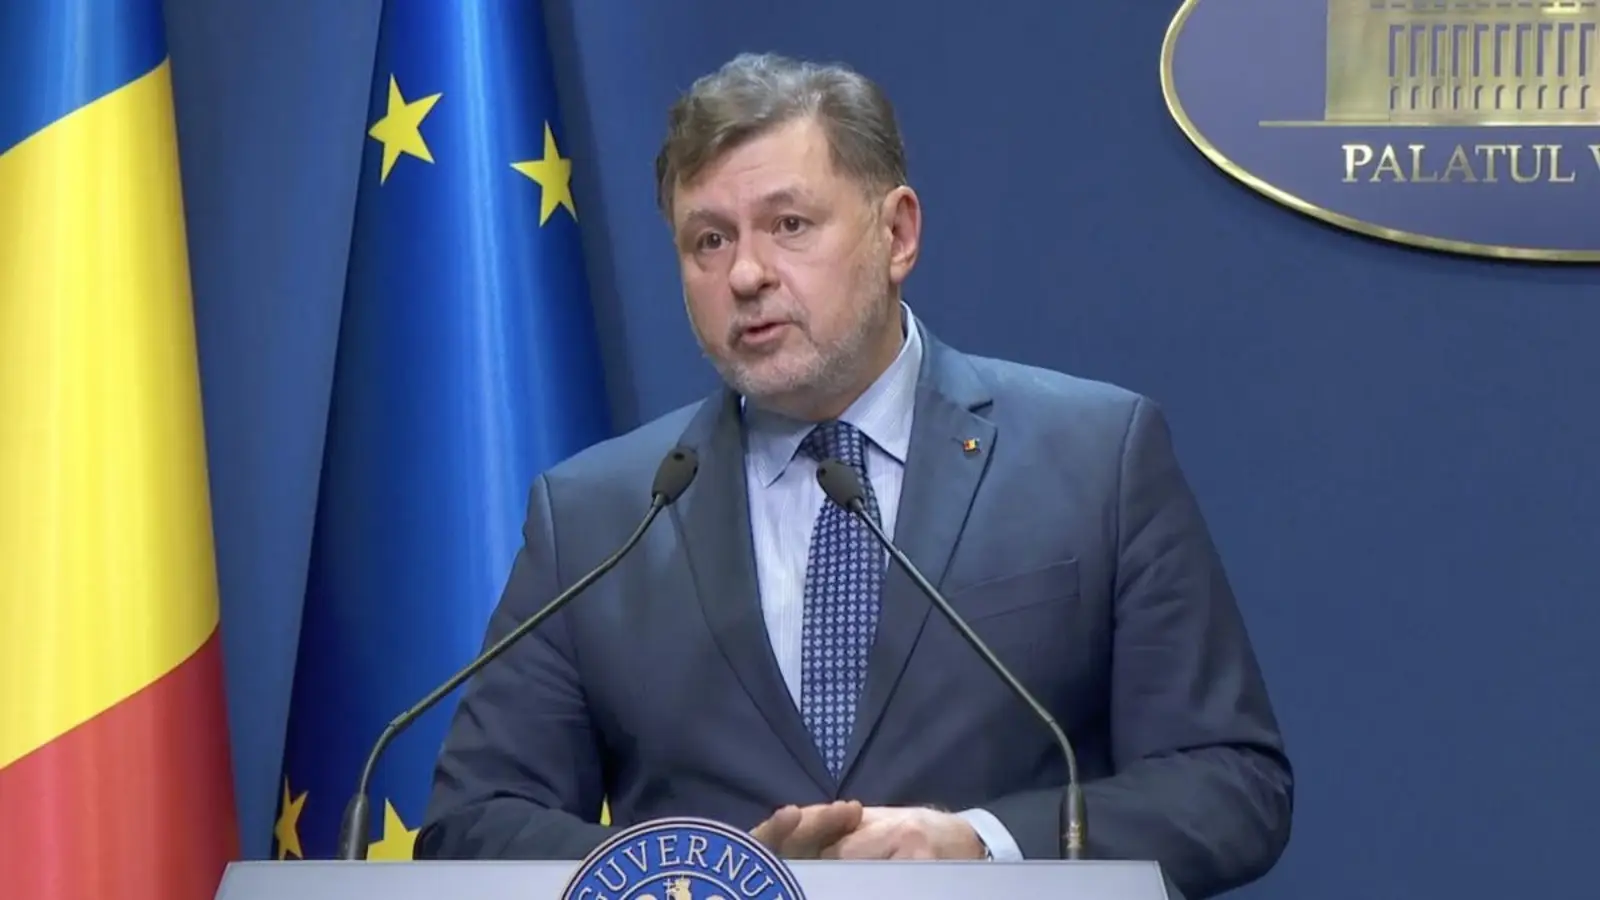 Minister van Volksgezondheid LAATSTE MOMENT Belangrijk besluit aangekondigd aan miljoenen Roemenen